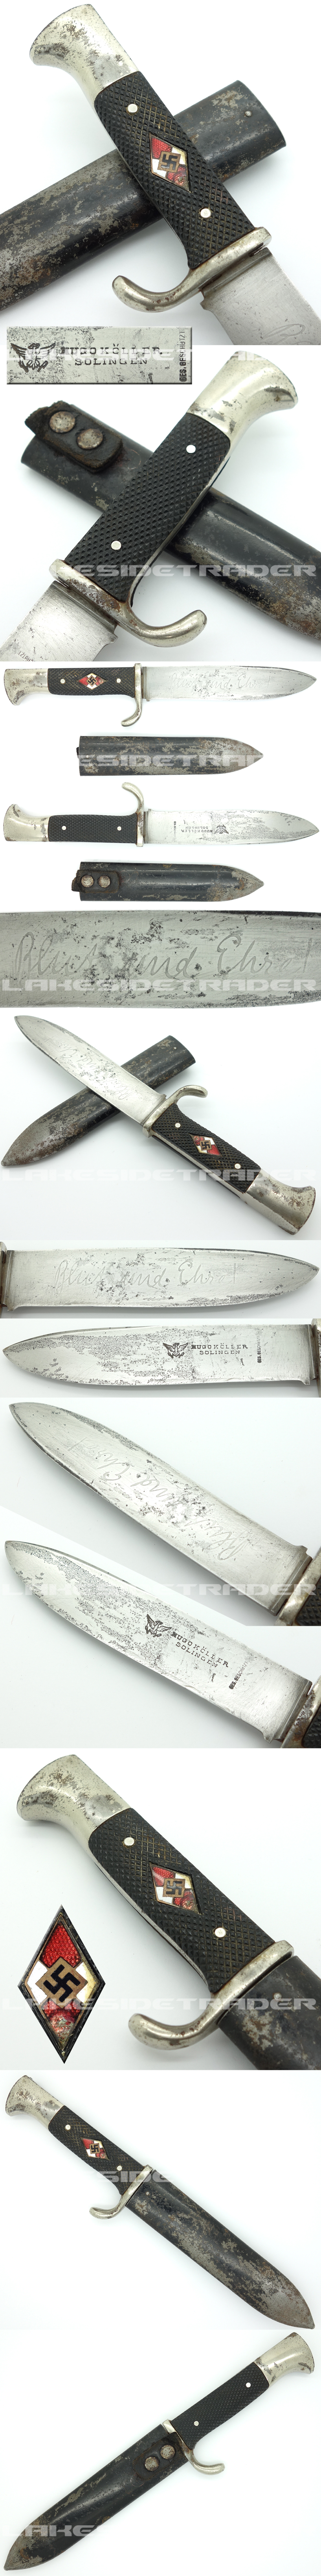 Early Hitler Youth Knife by Hugo Köller